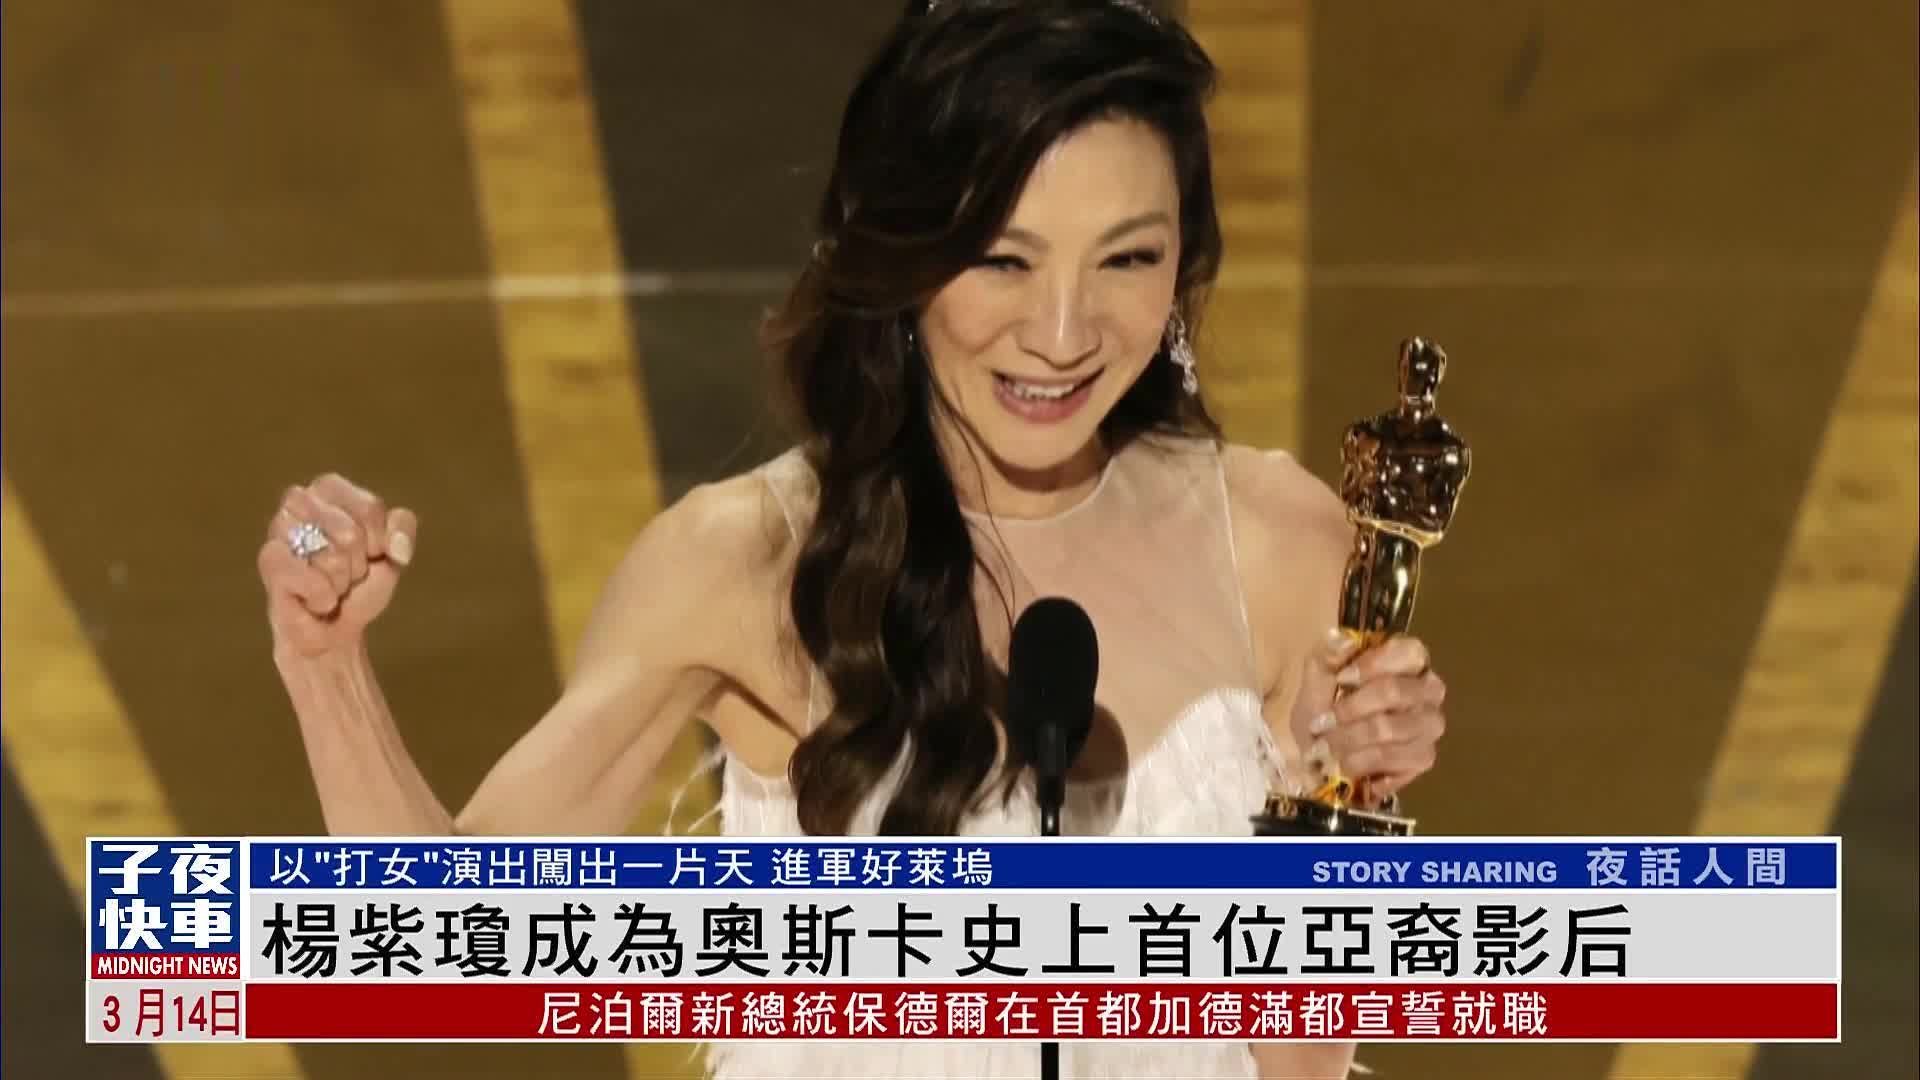 马来西亚演员杨紫琼荣获奥斯卡影后桂冠 40年努力终见回报 - 哔哩哔哩